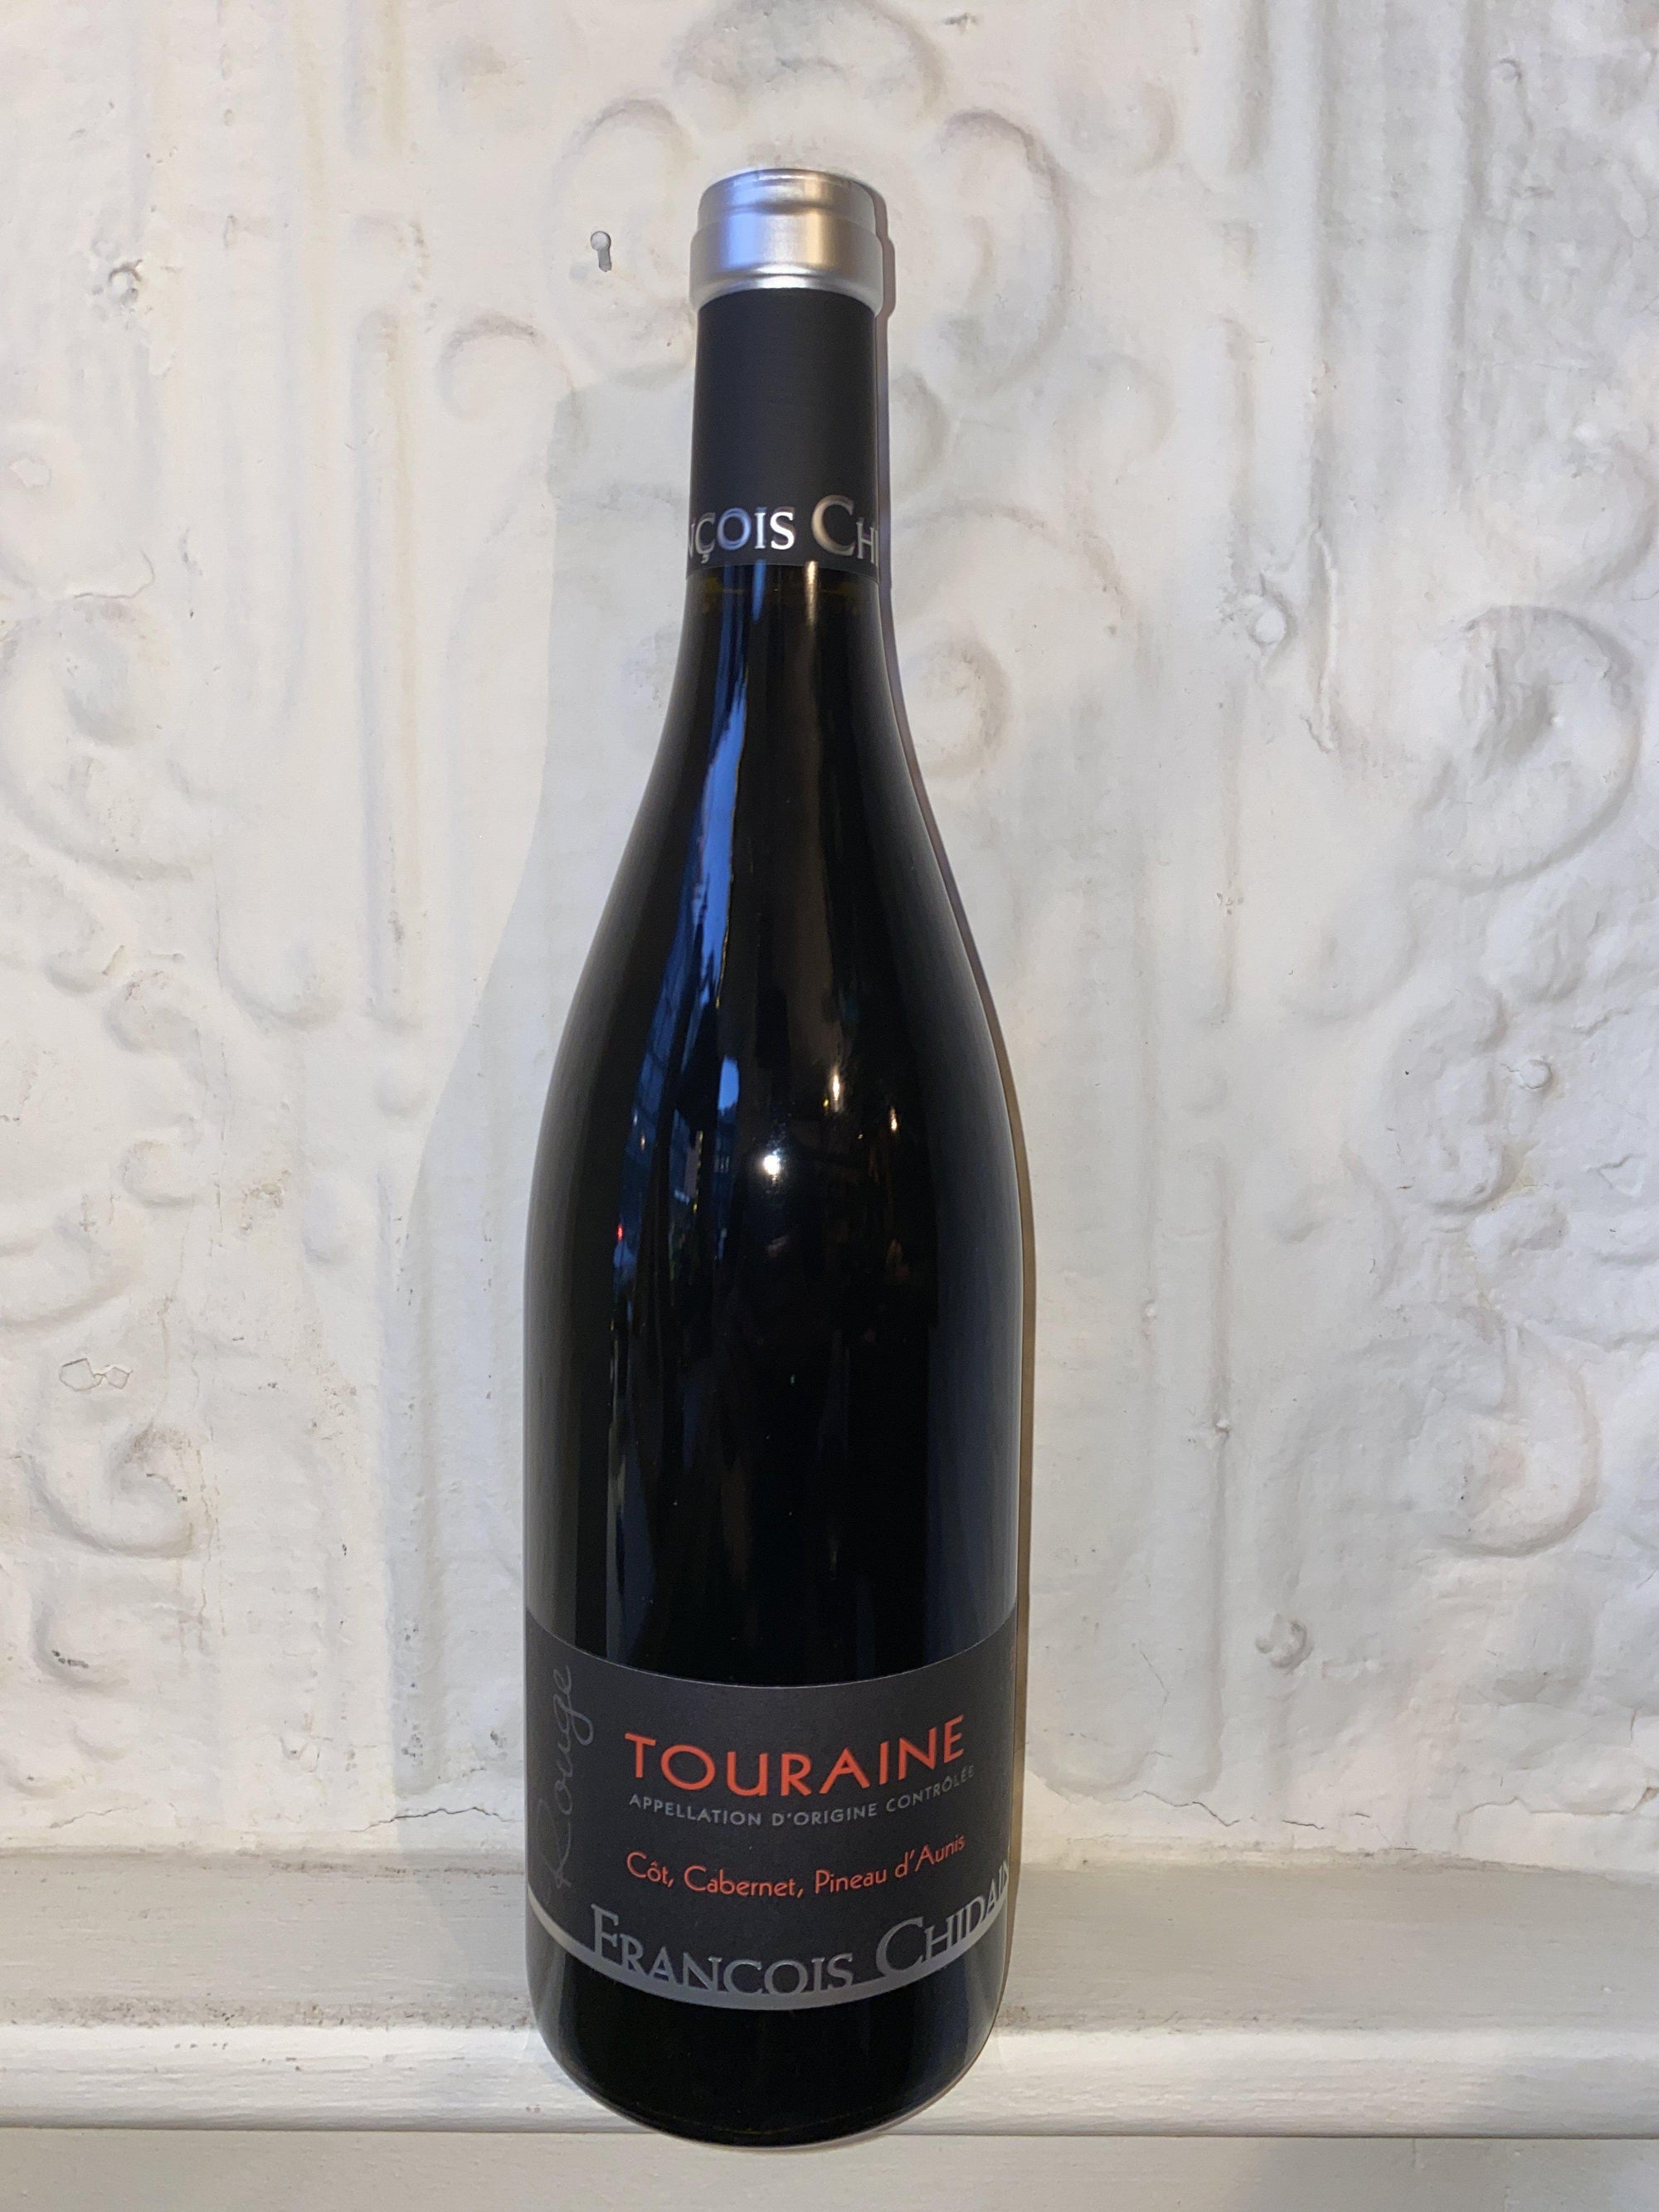 Touraine Rouge, Francois Chidaine 2018 (Loire, France)-Wine-Bibber & Bell